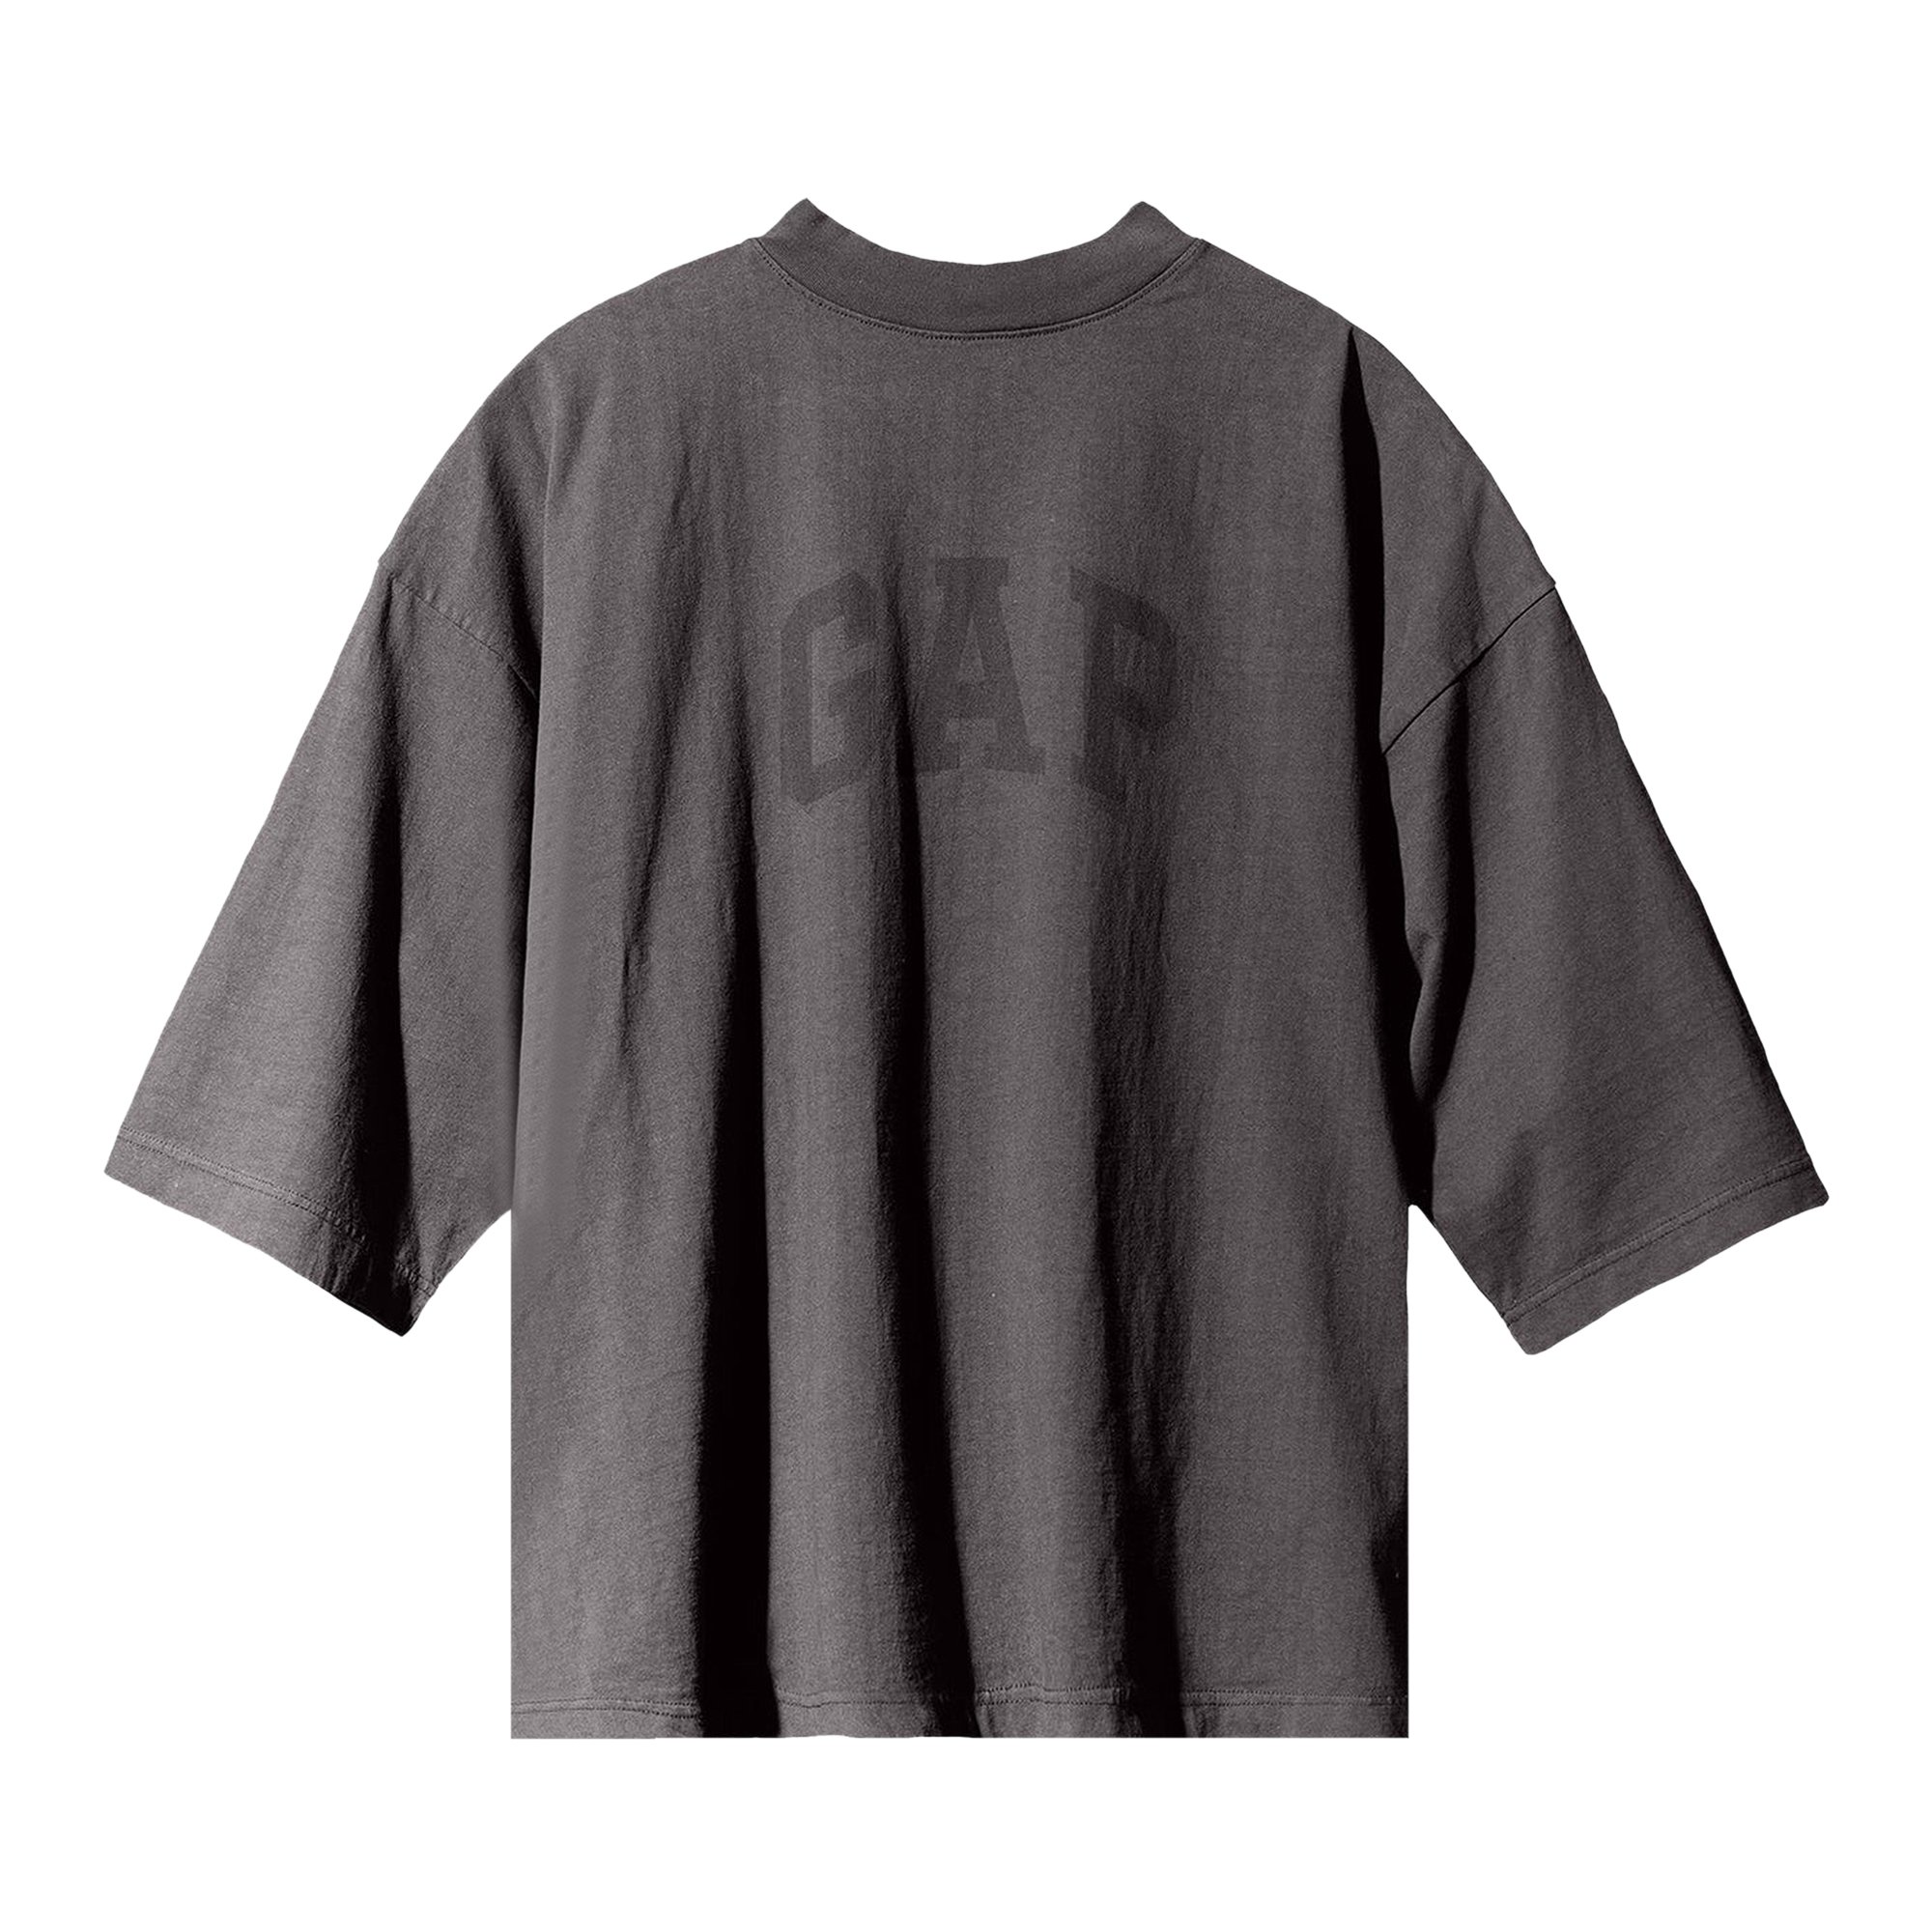 Yeezy Gap Engineered by Balenciaga Dove 3/4 Sleeve Tee 'Dark Grey'